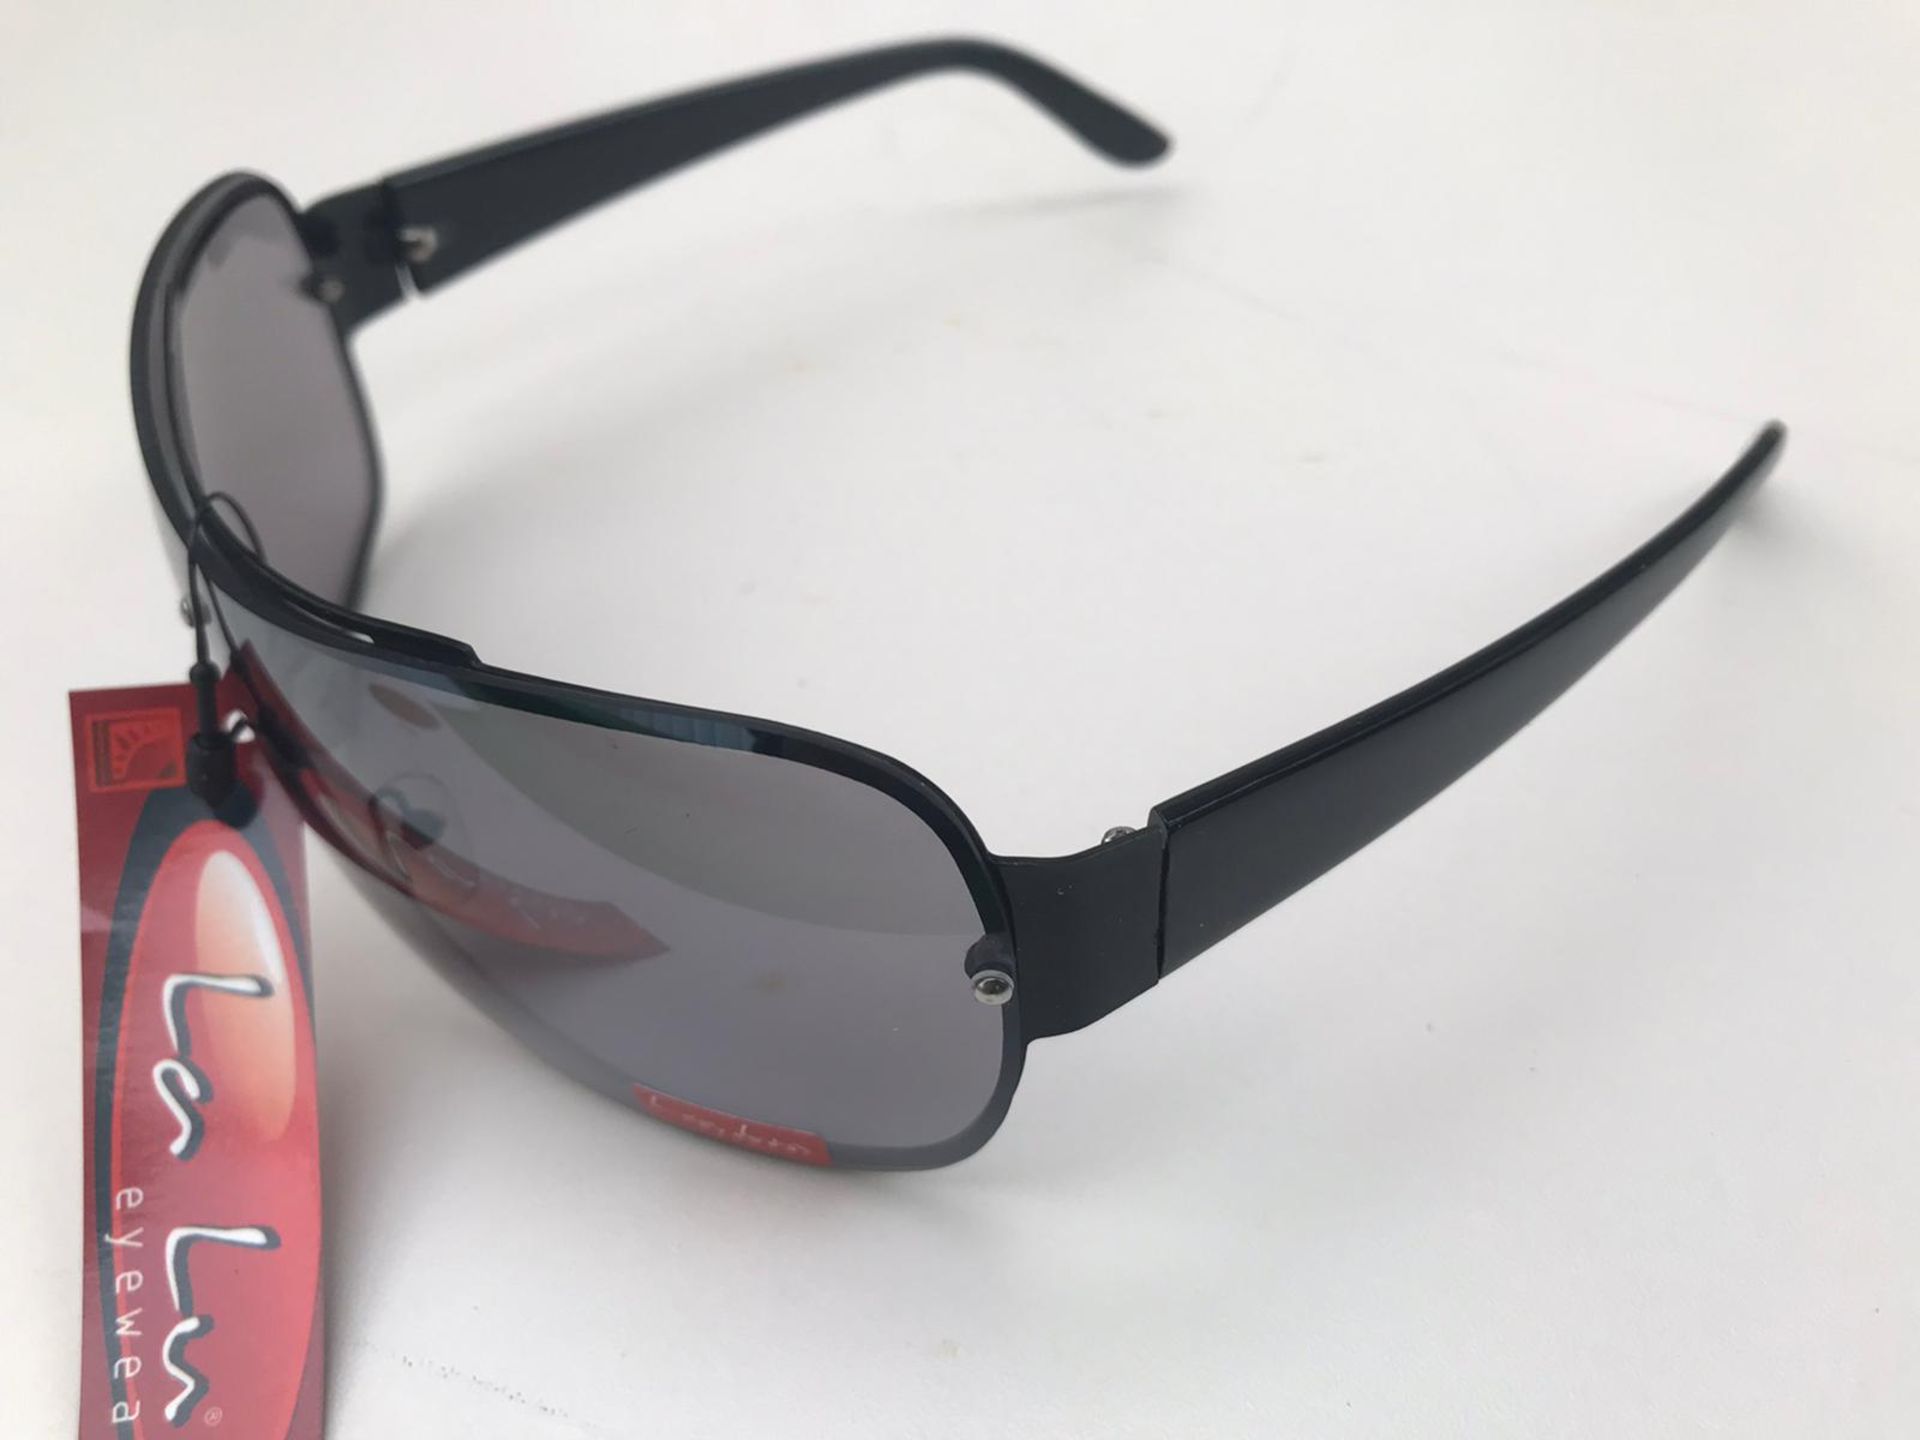 500x La Lu Branded Sunglasses | Various Styles | Unopened & Unused - Image 24 of 33